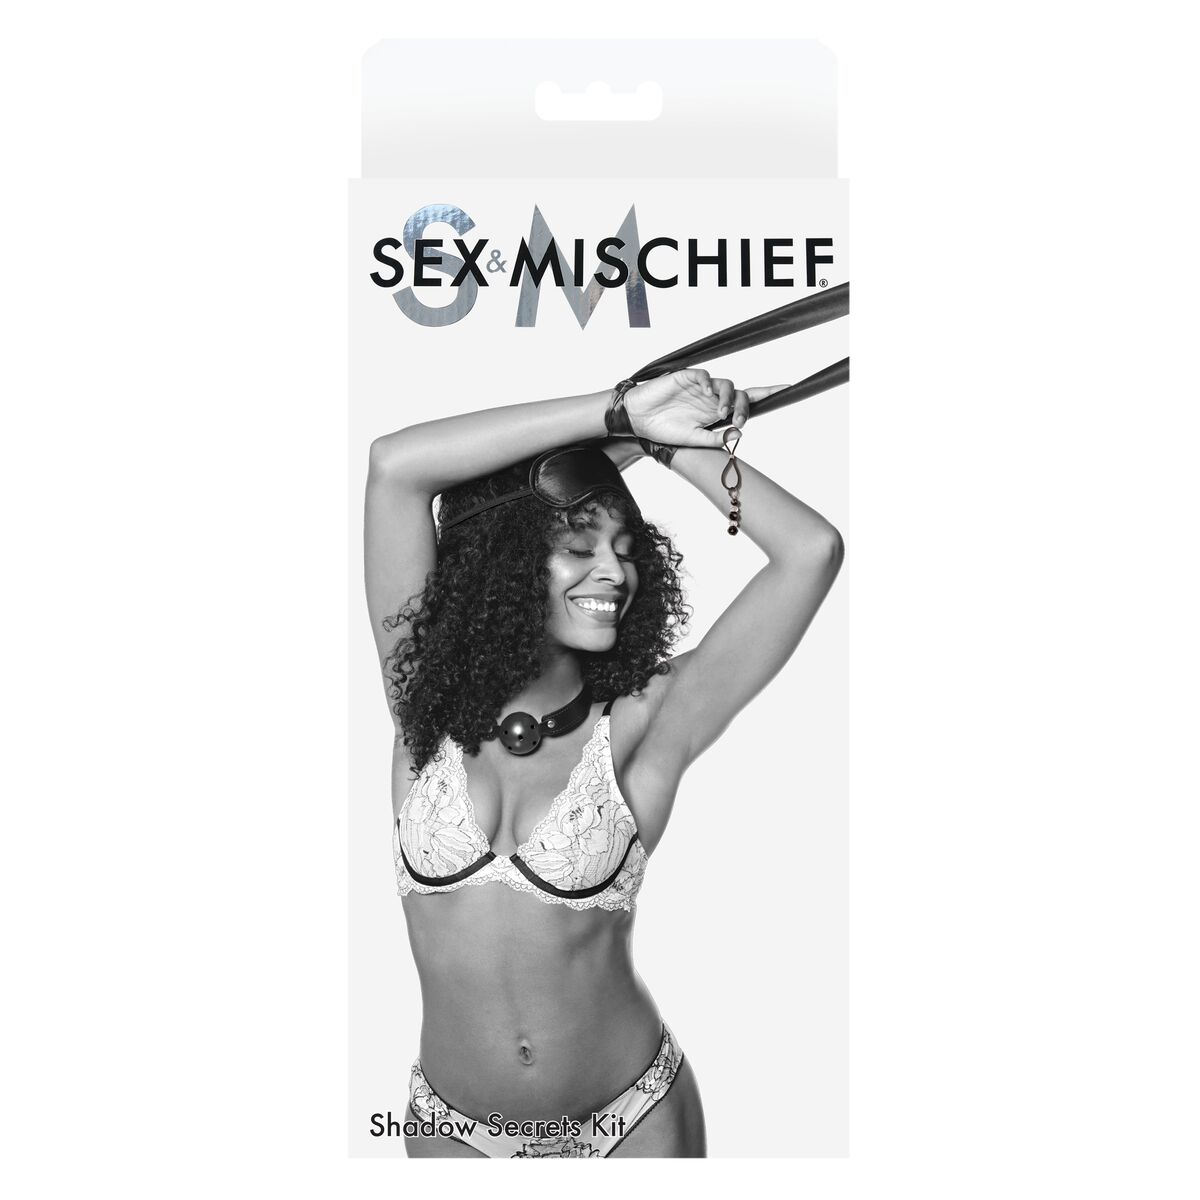 Osta tuote Eroottinen bondagesetti Sportsheets Sex & Mischief Shadow Secrets 3 Kappaletta verkkokaupastamme Korhone: Seksikauppa & Erotiikka 20% alennuksella koodilla VIIKONLOPPU